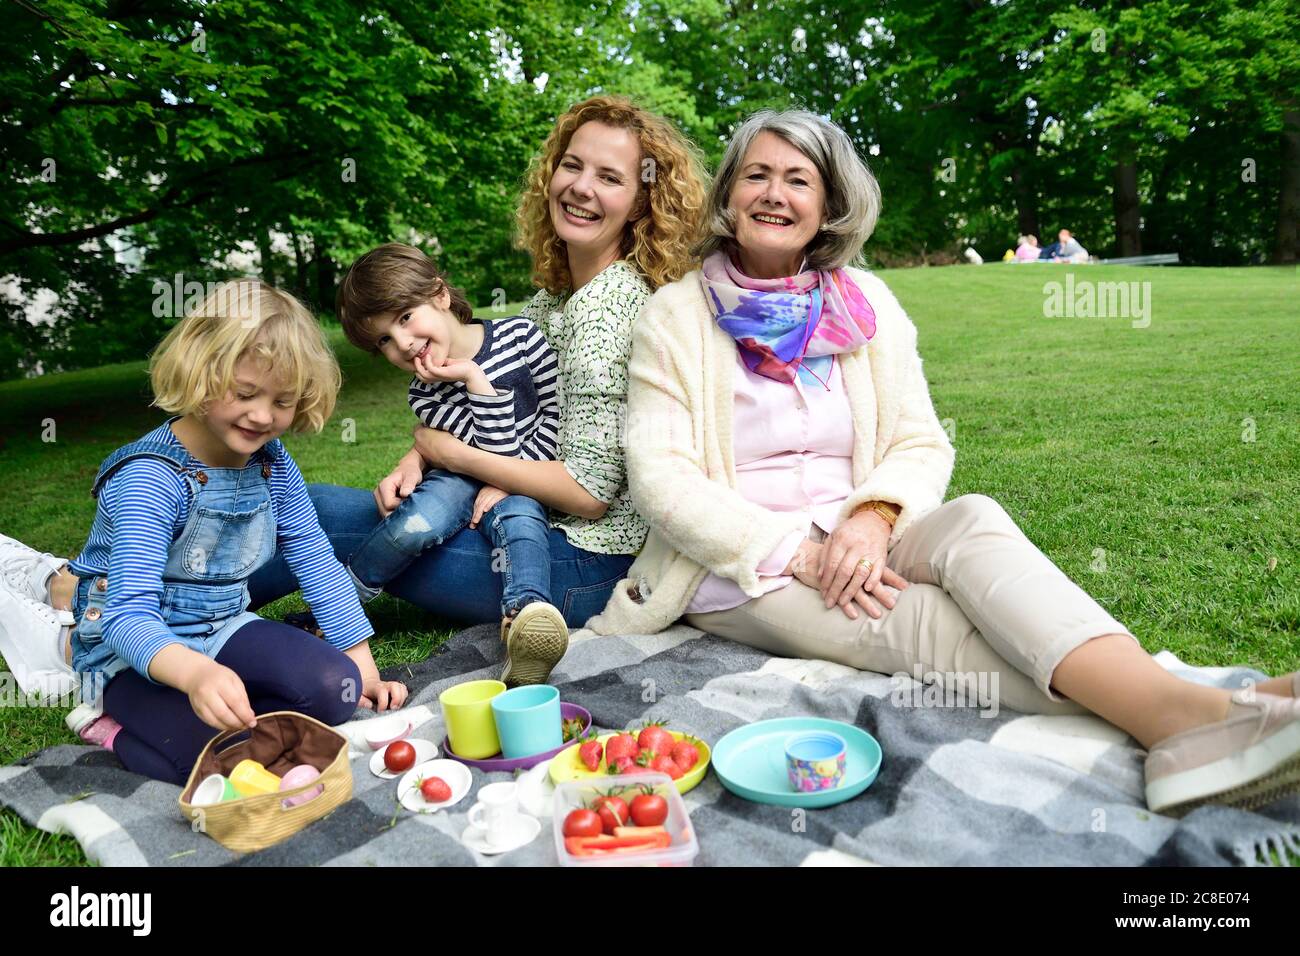 Happy three generation family enjoying picnic at public park Stock Photo